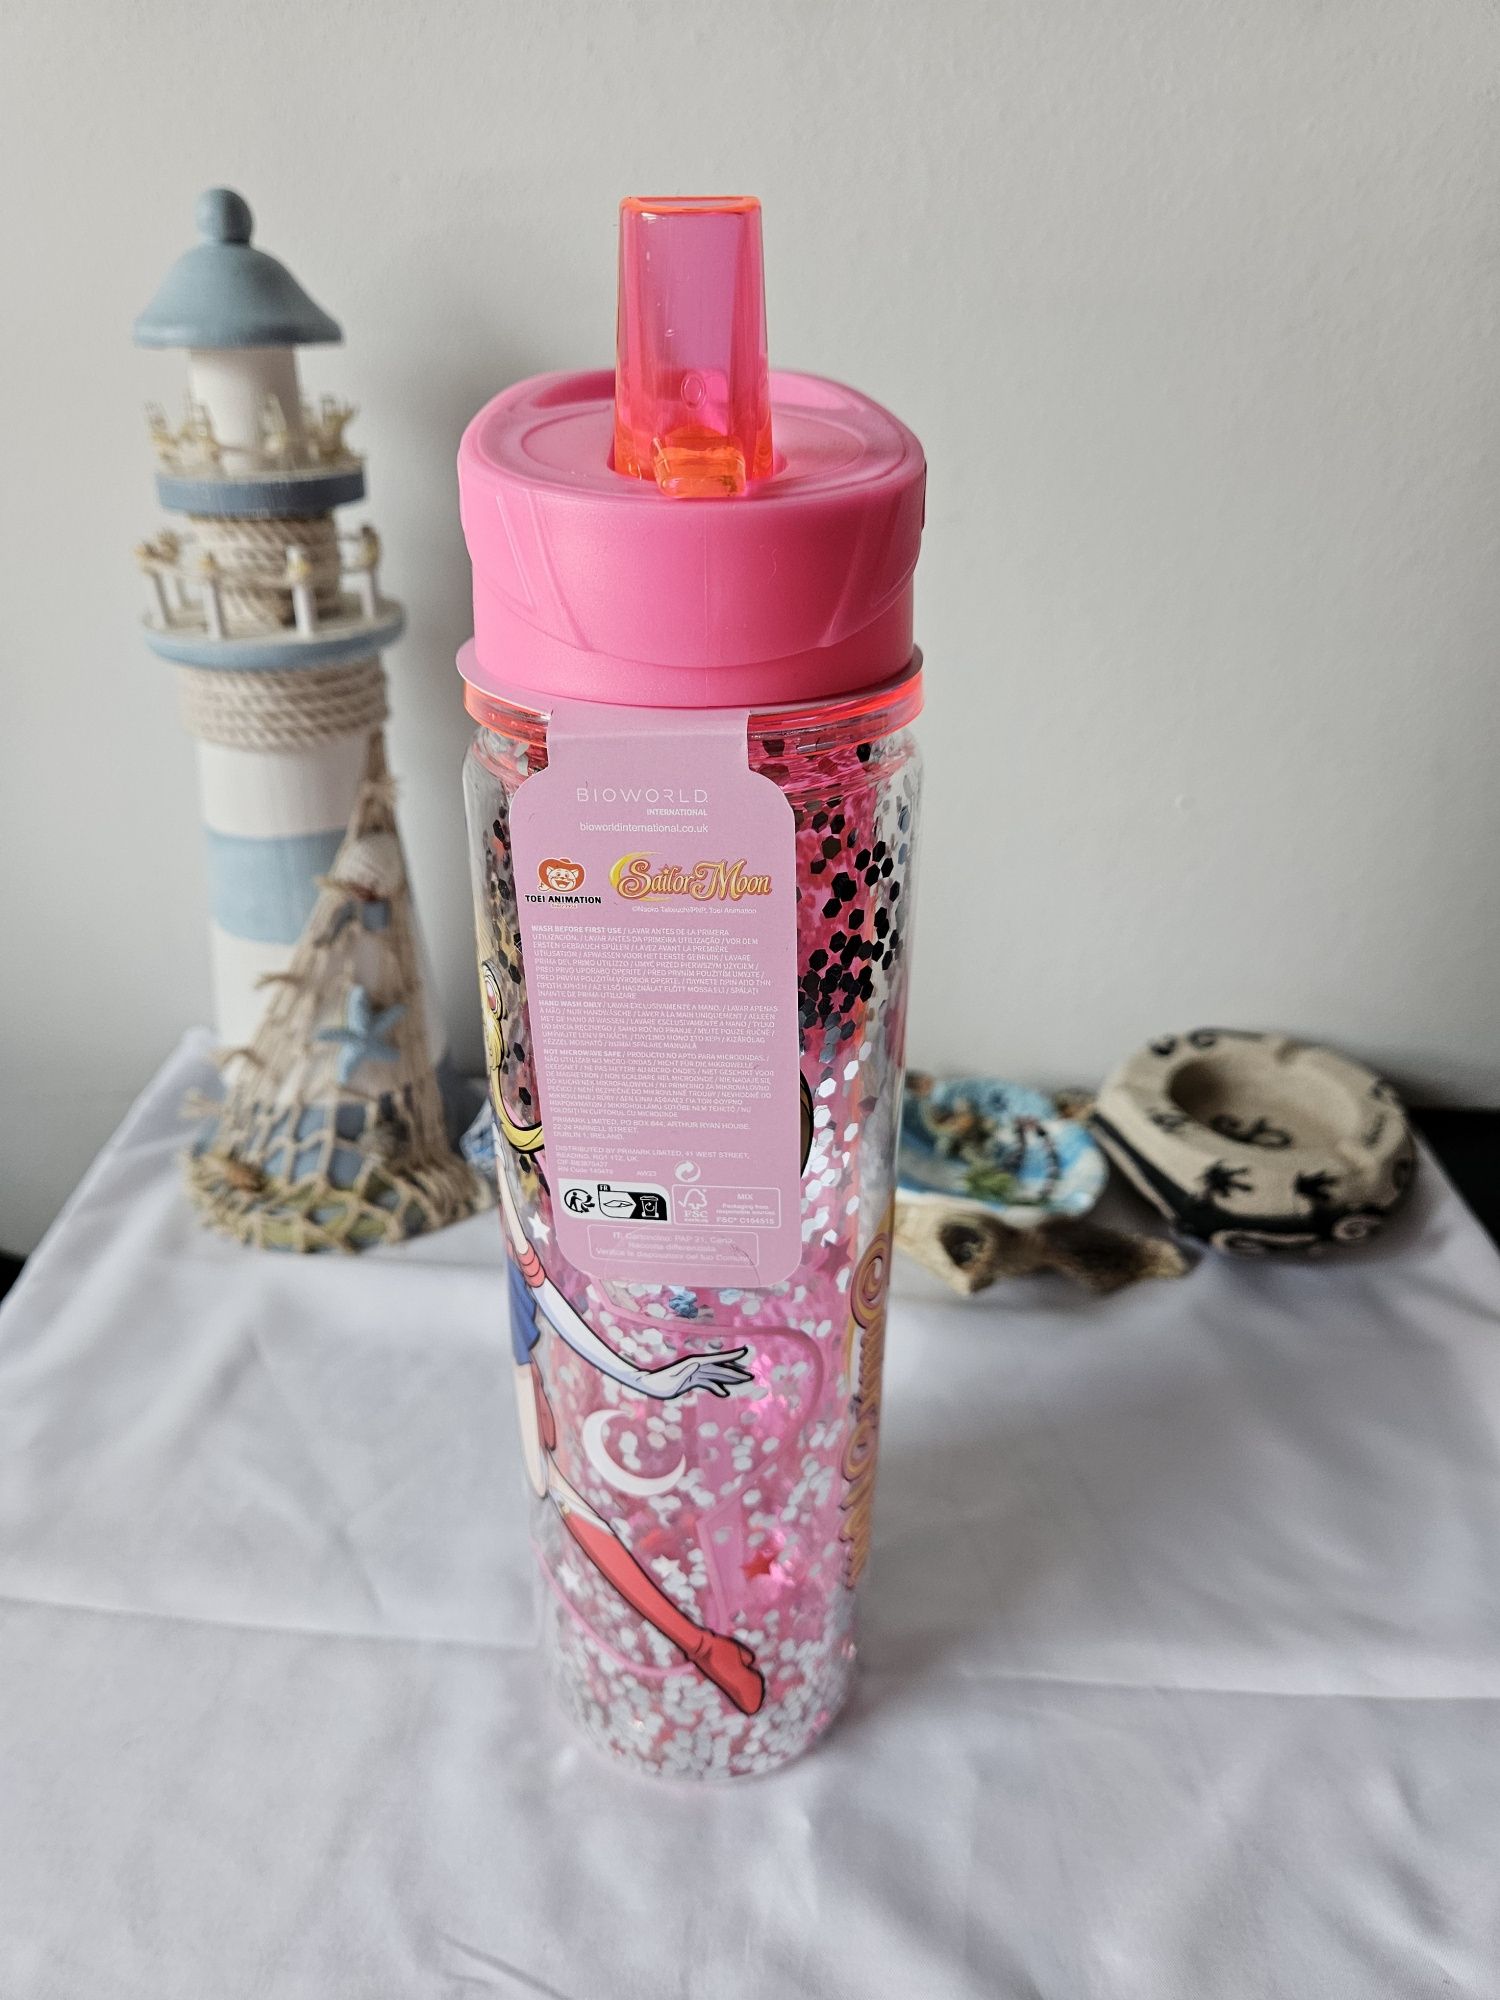 Sailor moon - garrafa / water bottle cold or hot